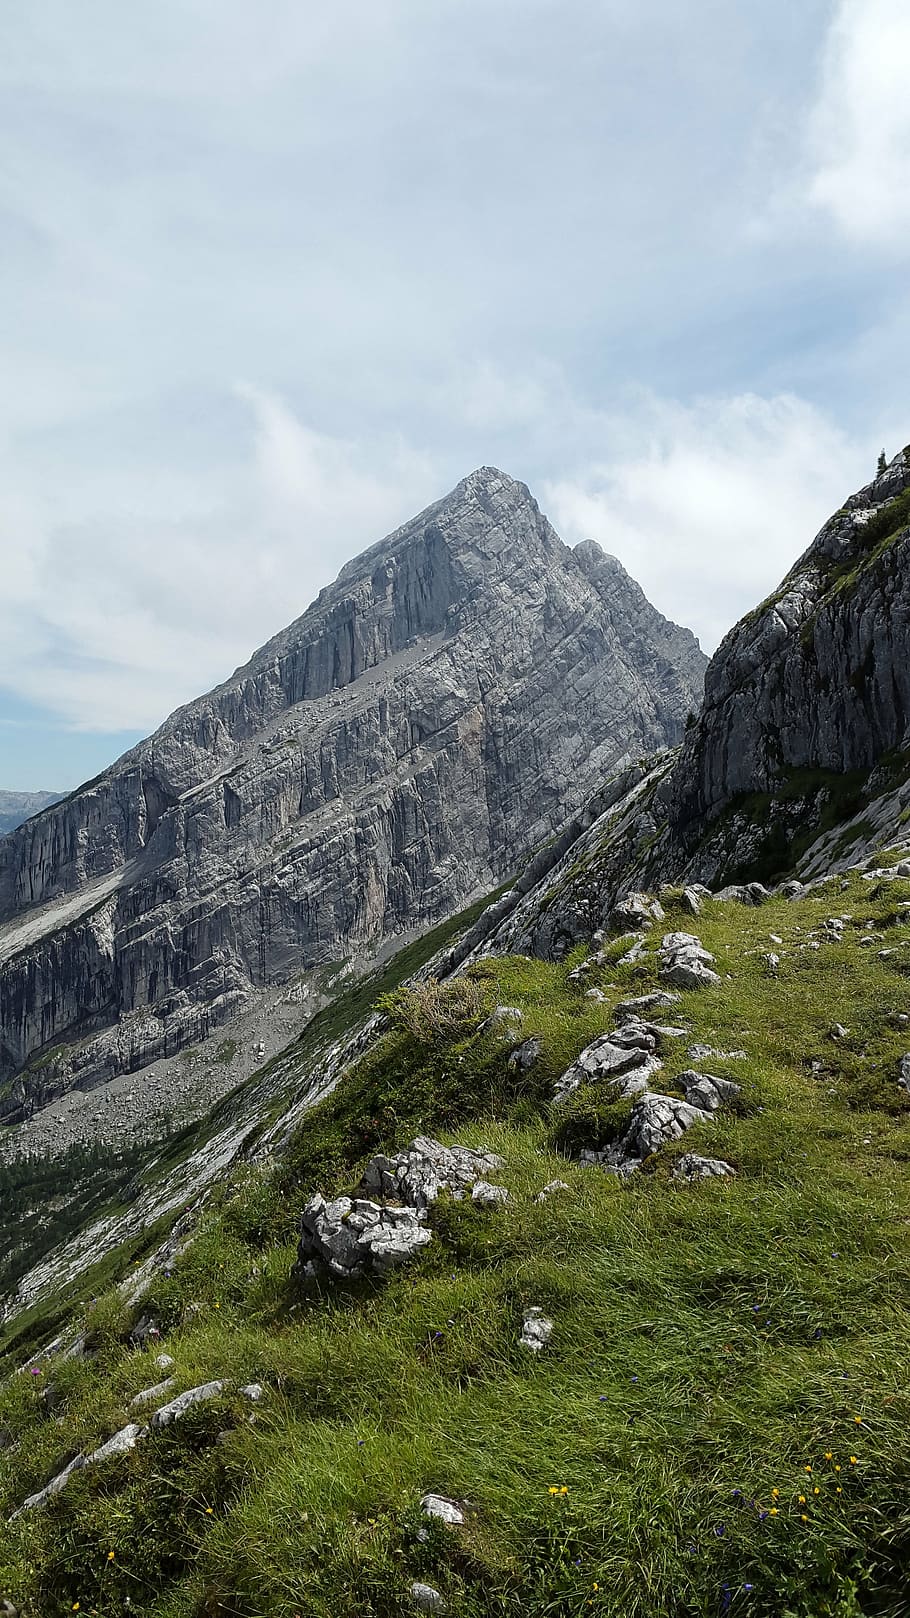 kleiner watzmann, cimeira, watzmannfrau, watzfrau, alpino, rocha, terra berchtesgadener, montanhas, cumes berchtesgaden, parque nacional berchtesgaden